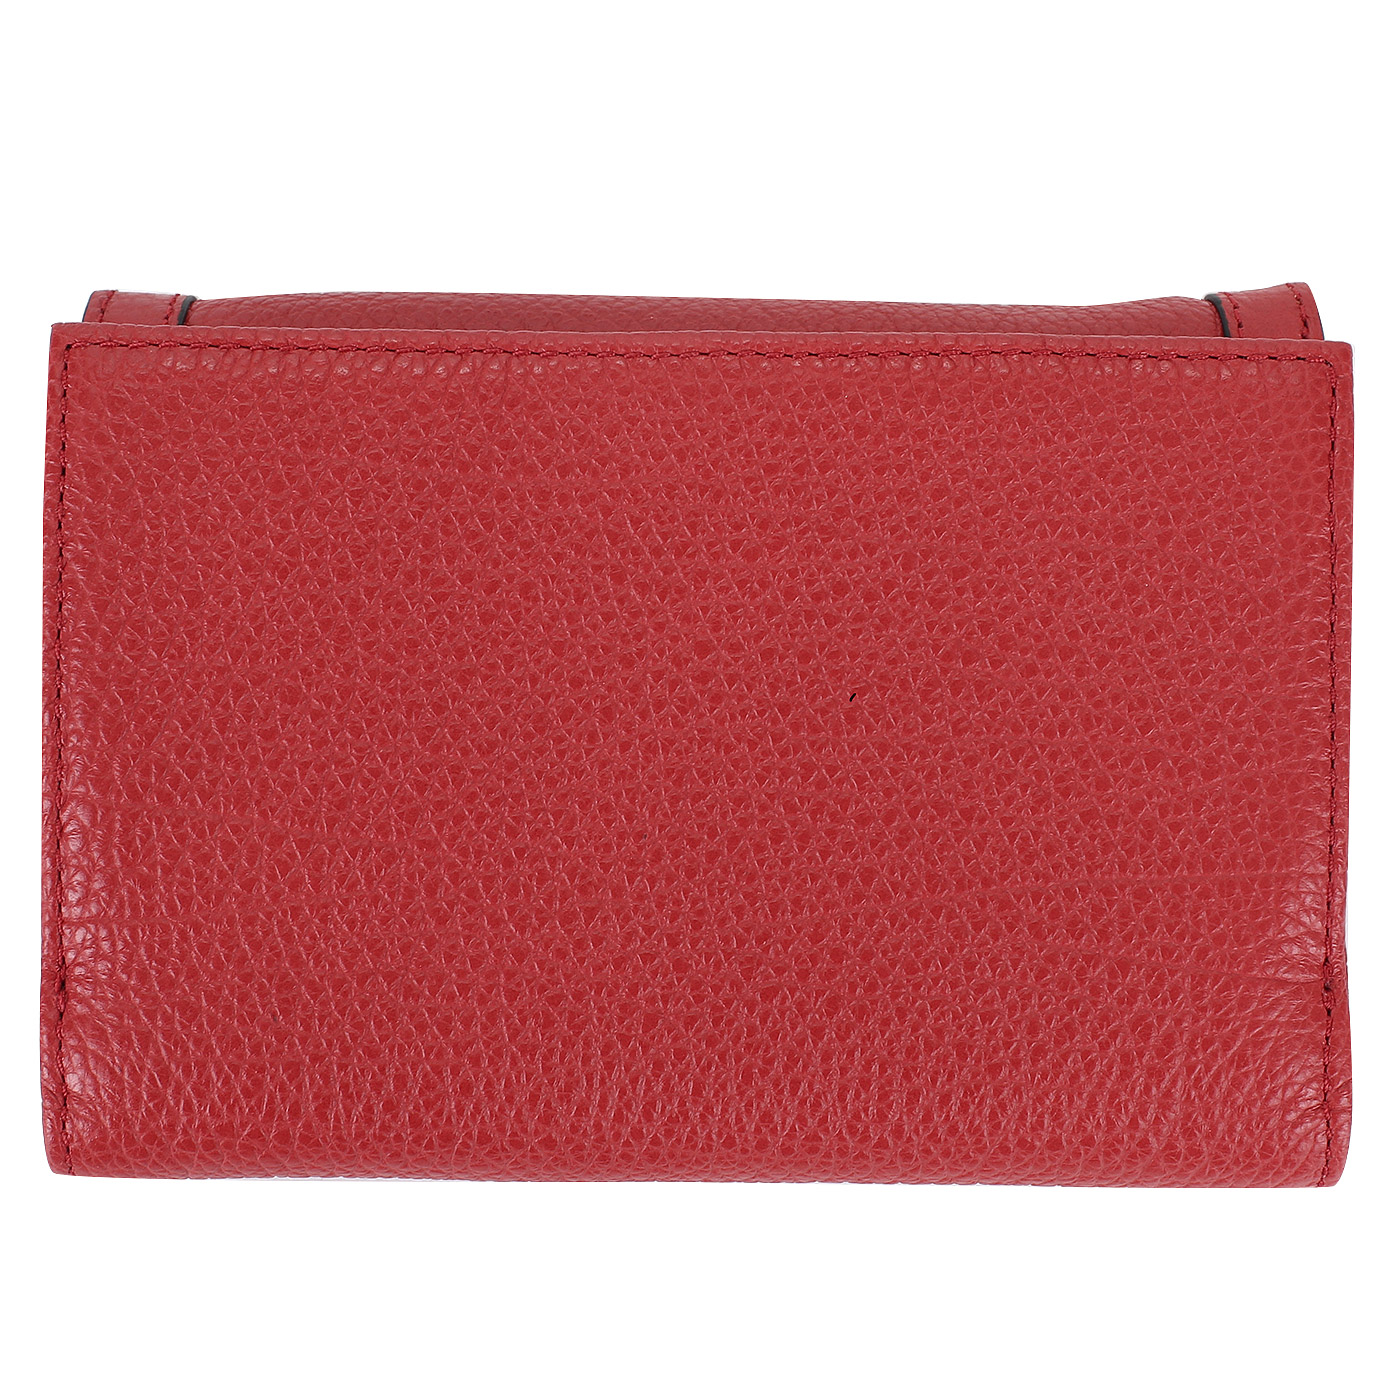 Красный кожаный кошелек Coccinelle Vega